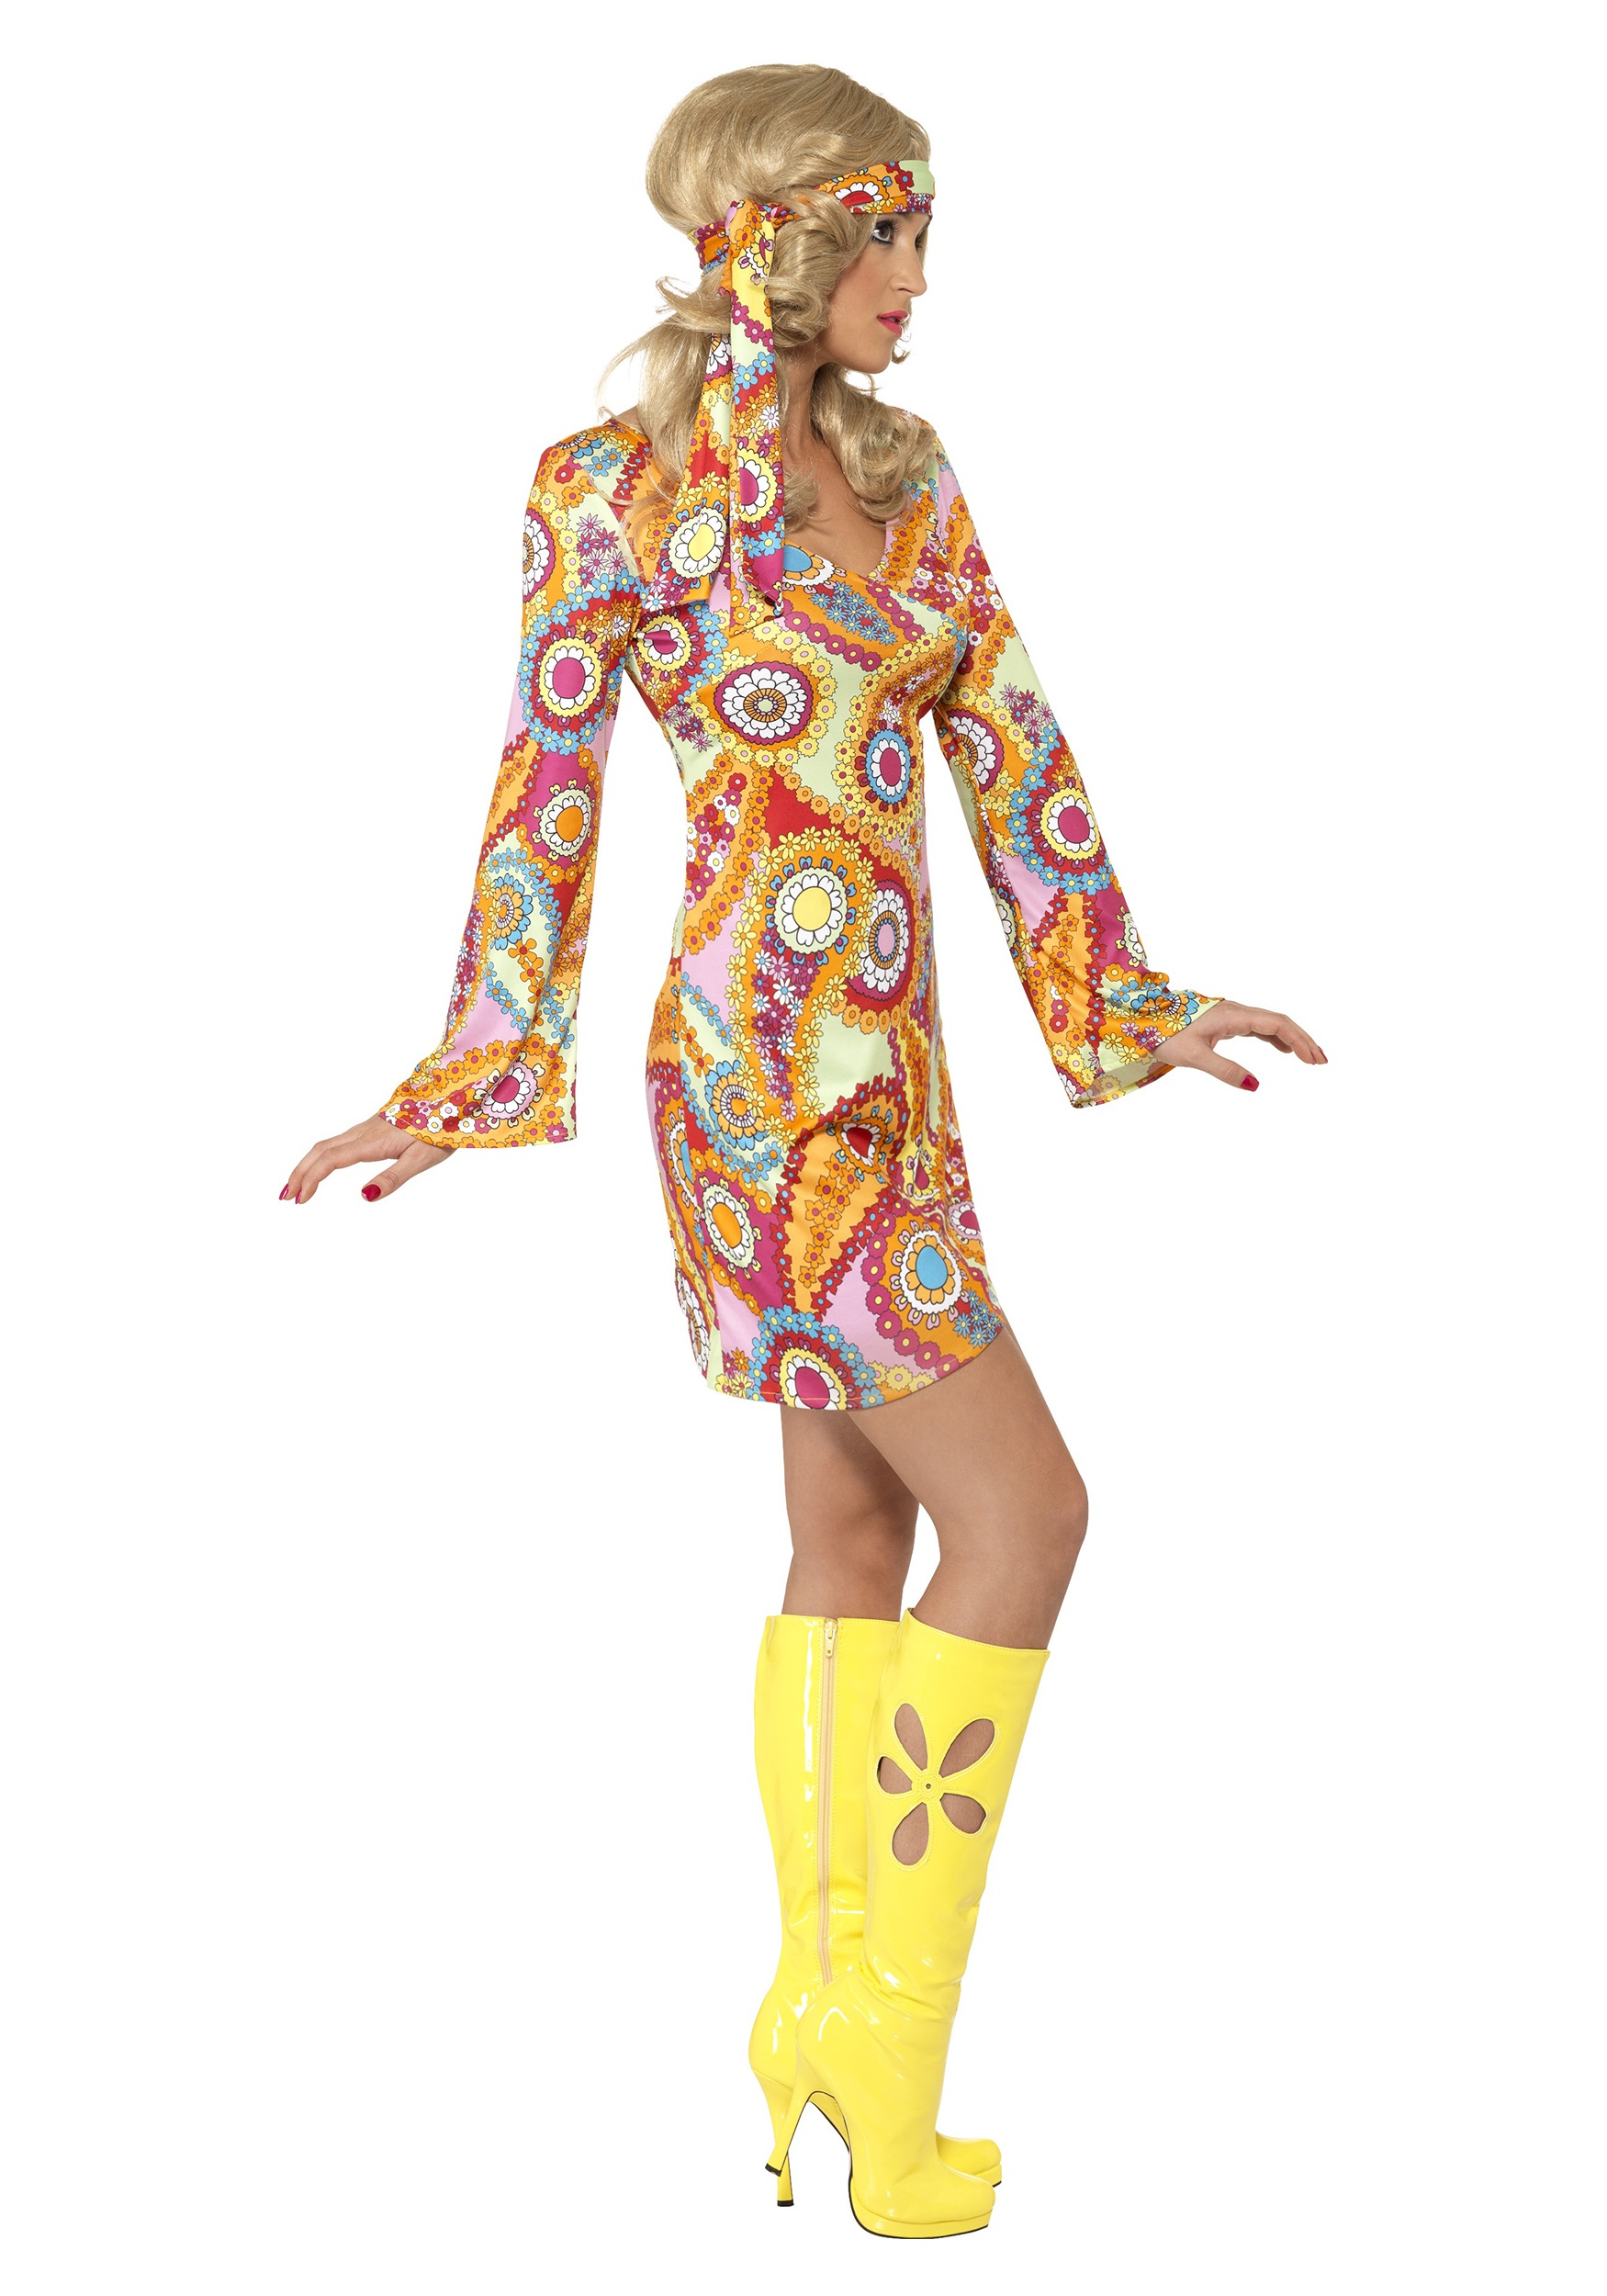 1960s Paisley Hippie Costume Image3 